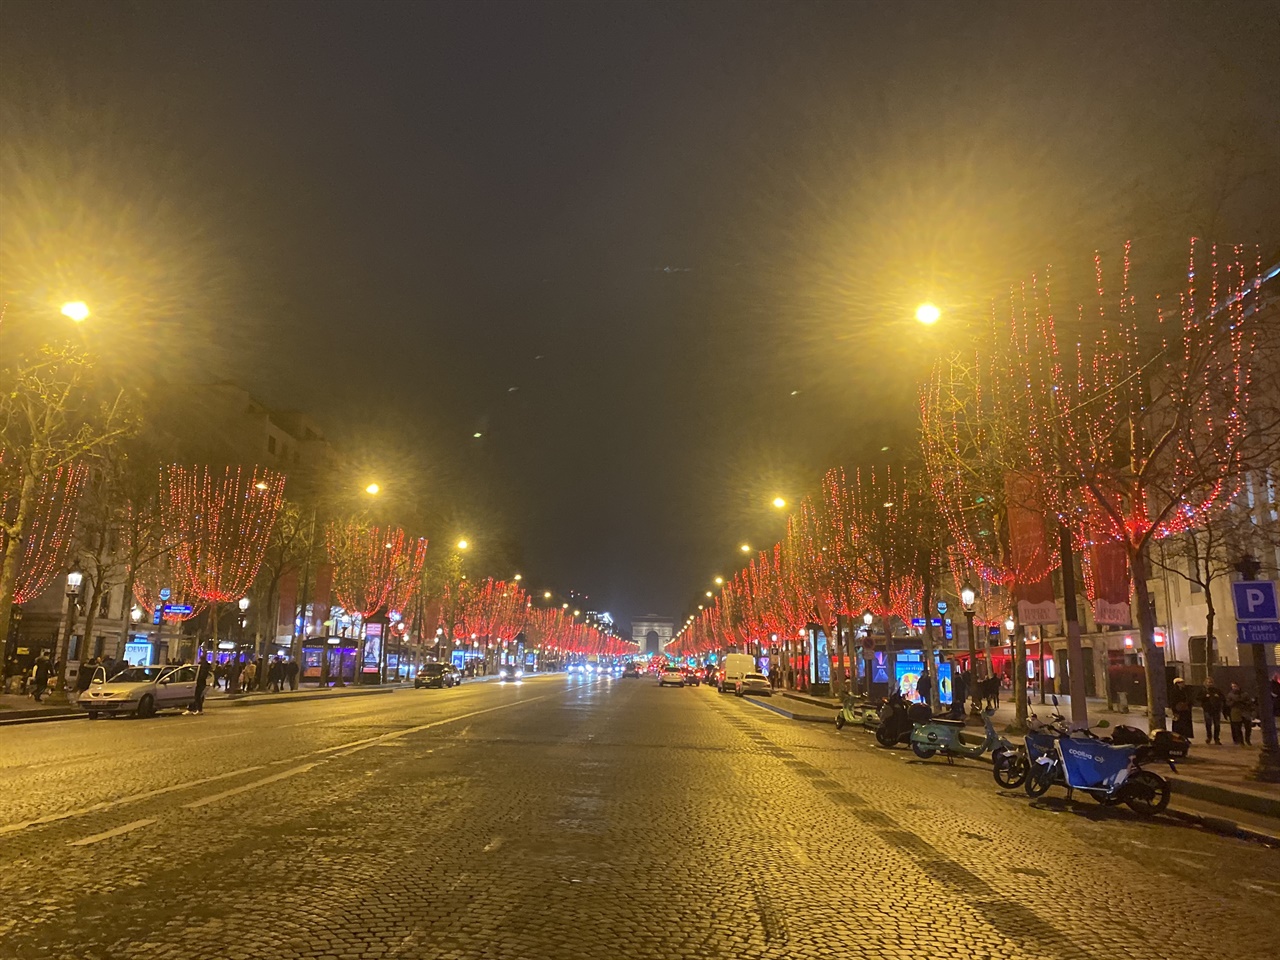 2021년 크리스마스 이브 저녁의 샹젤리제 거리 모습. 저 멀리 개선문이 보이고, 나무에 설치된 붉은 조명이 크리스마스 분위기를 내고 있다. 